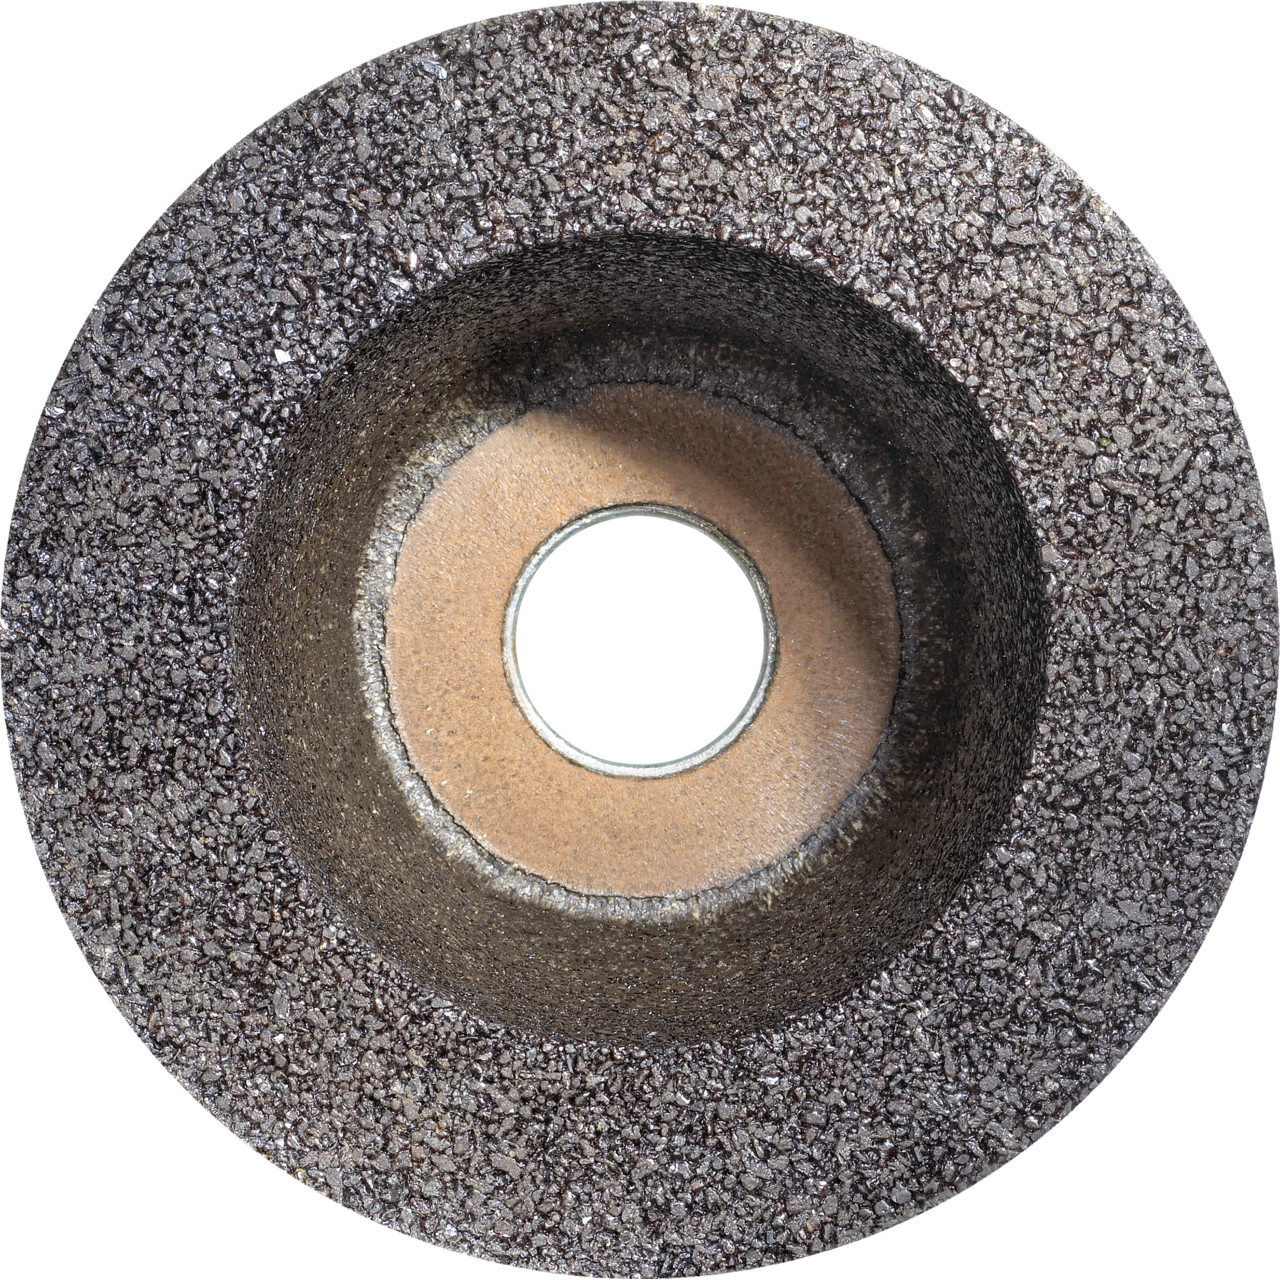 Tazza in resina sintetica Tyrolit D/JxDxH 130/90x55x22,23 Per acciaio, forma: ruota a tazza 11BT, Art. 310997